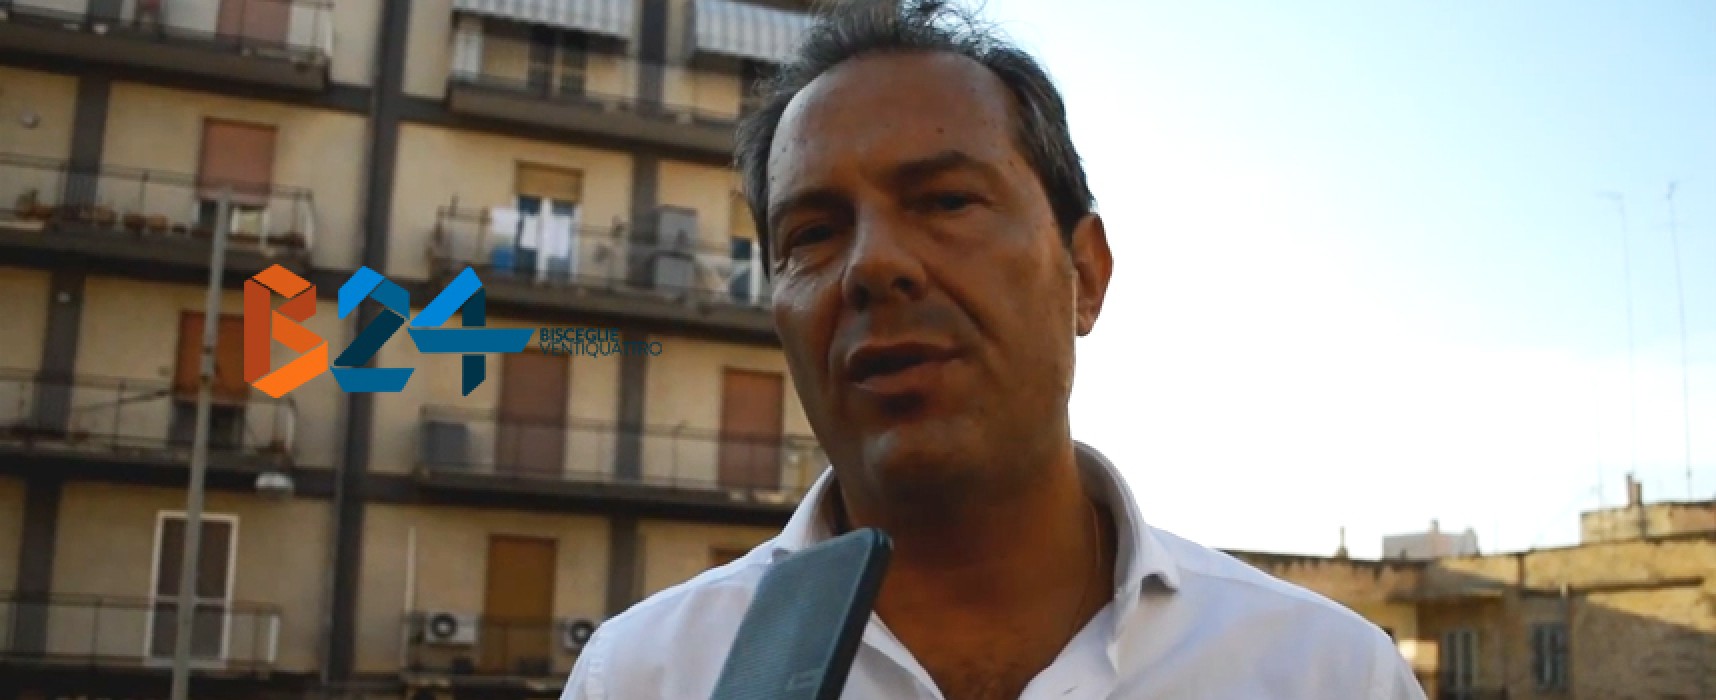 Intervista post elezioni al sindaco Spina: “Risultato positivo, premiate le larghe intese” / VIDEO